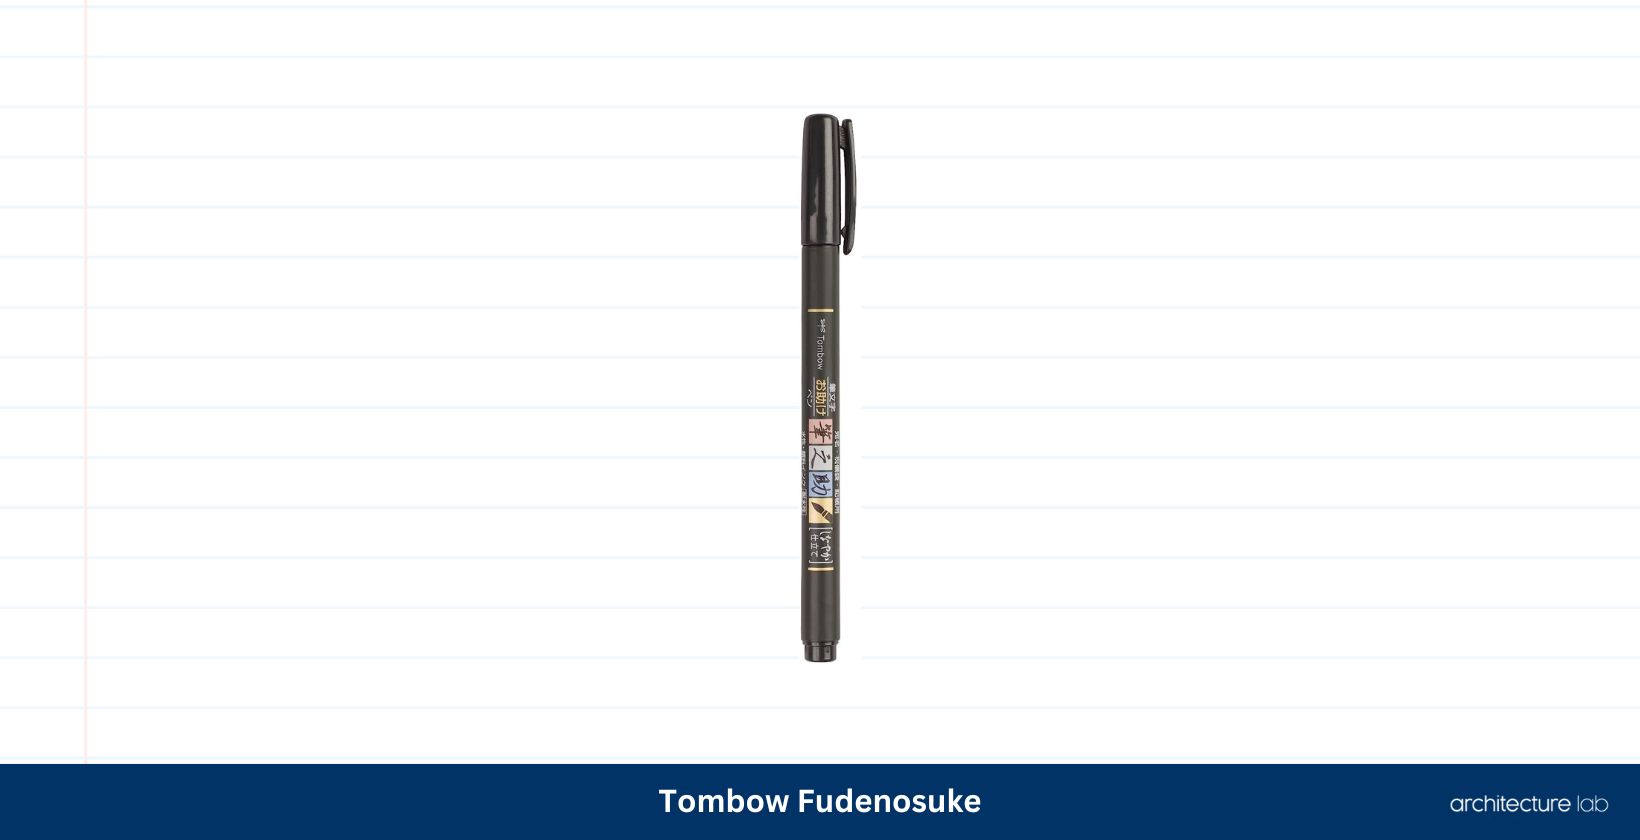 Tombow fudenosuke